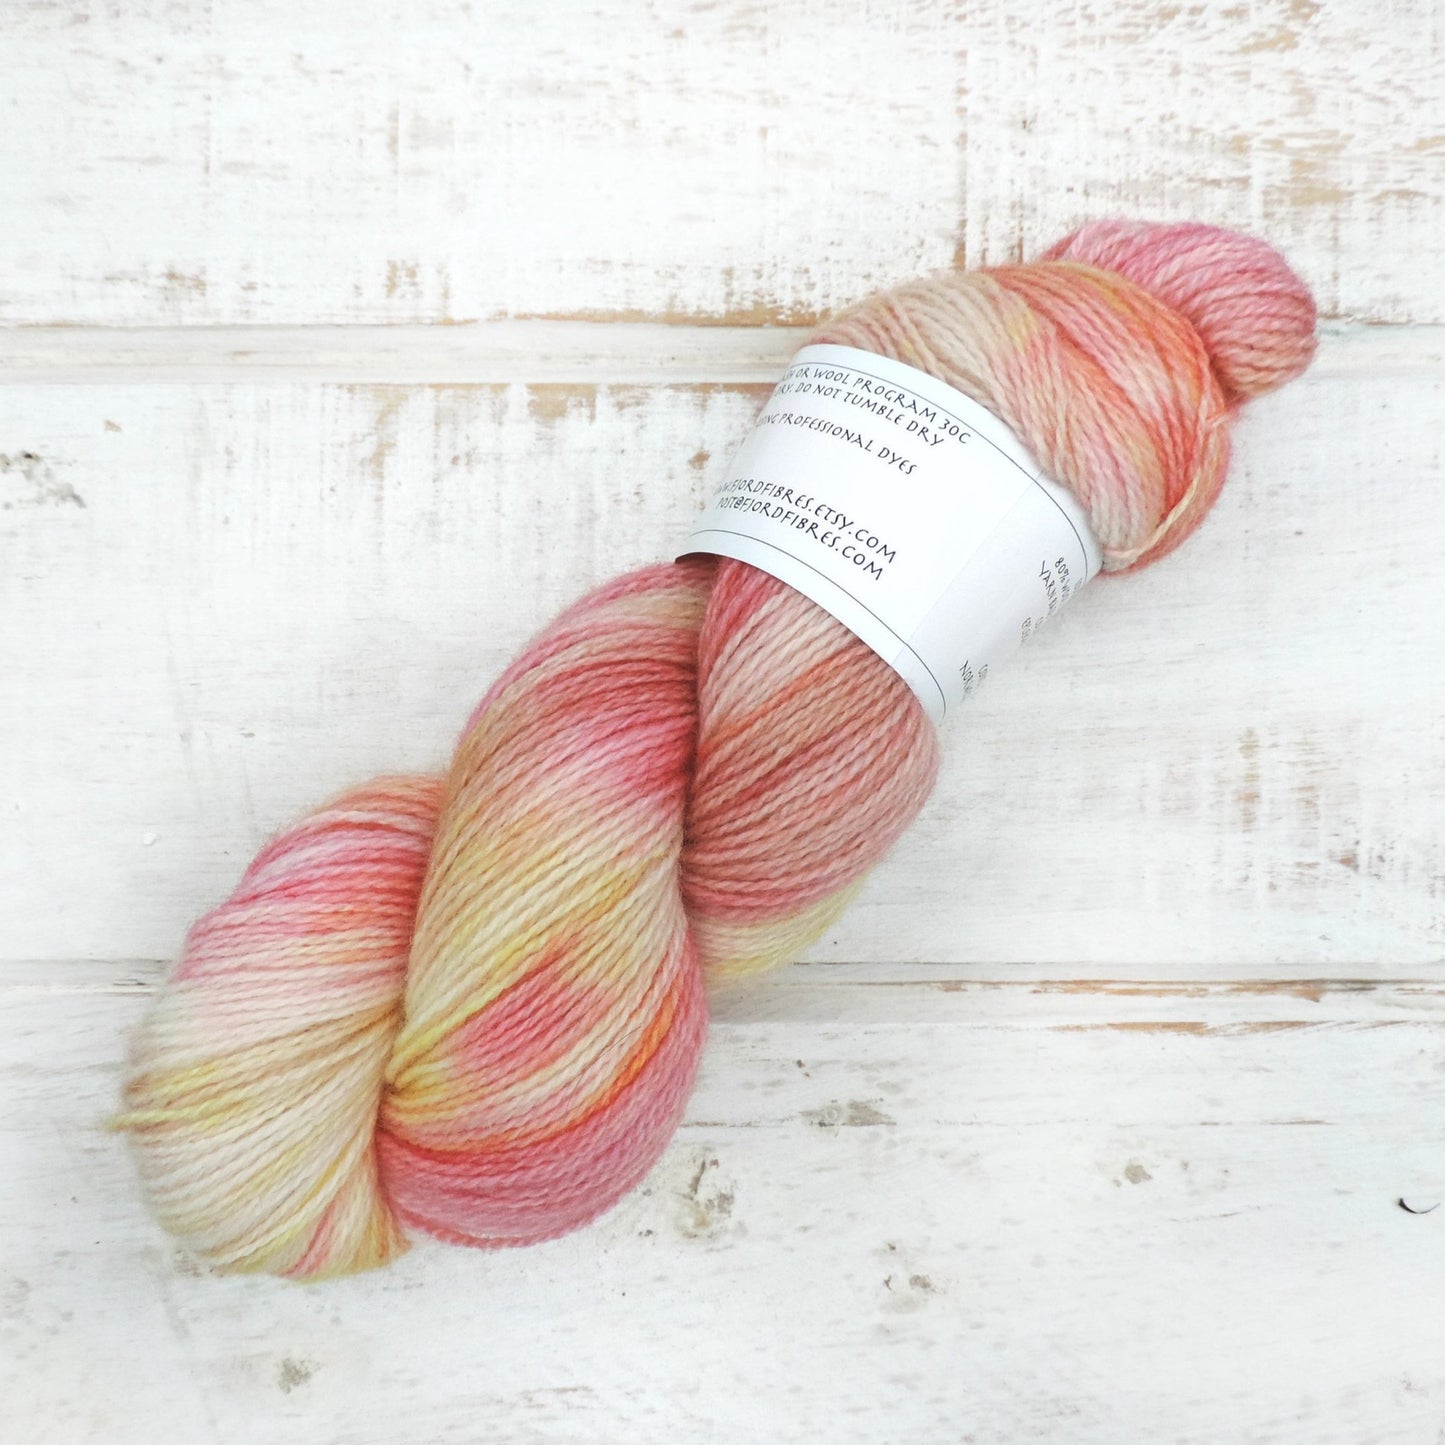 Eplekake (Apple Pie) - Trollfjord Sock - Hand Dyed Yarn - Variegated Yarn